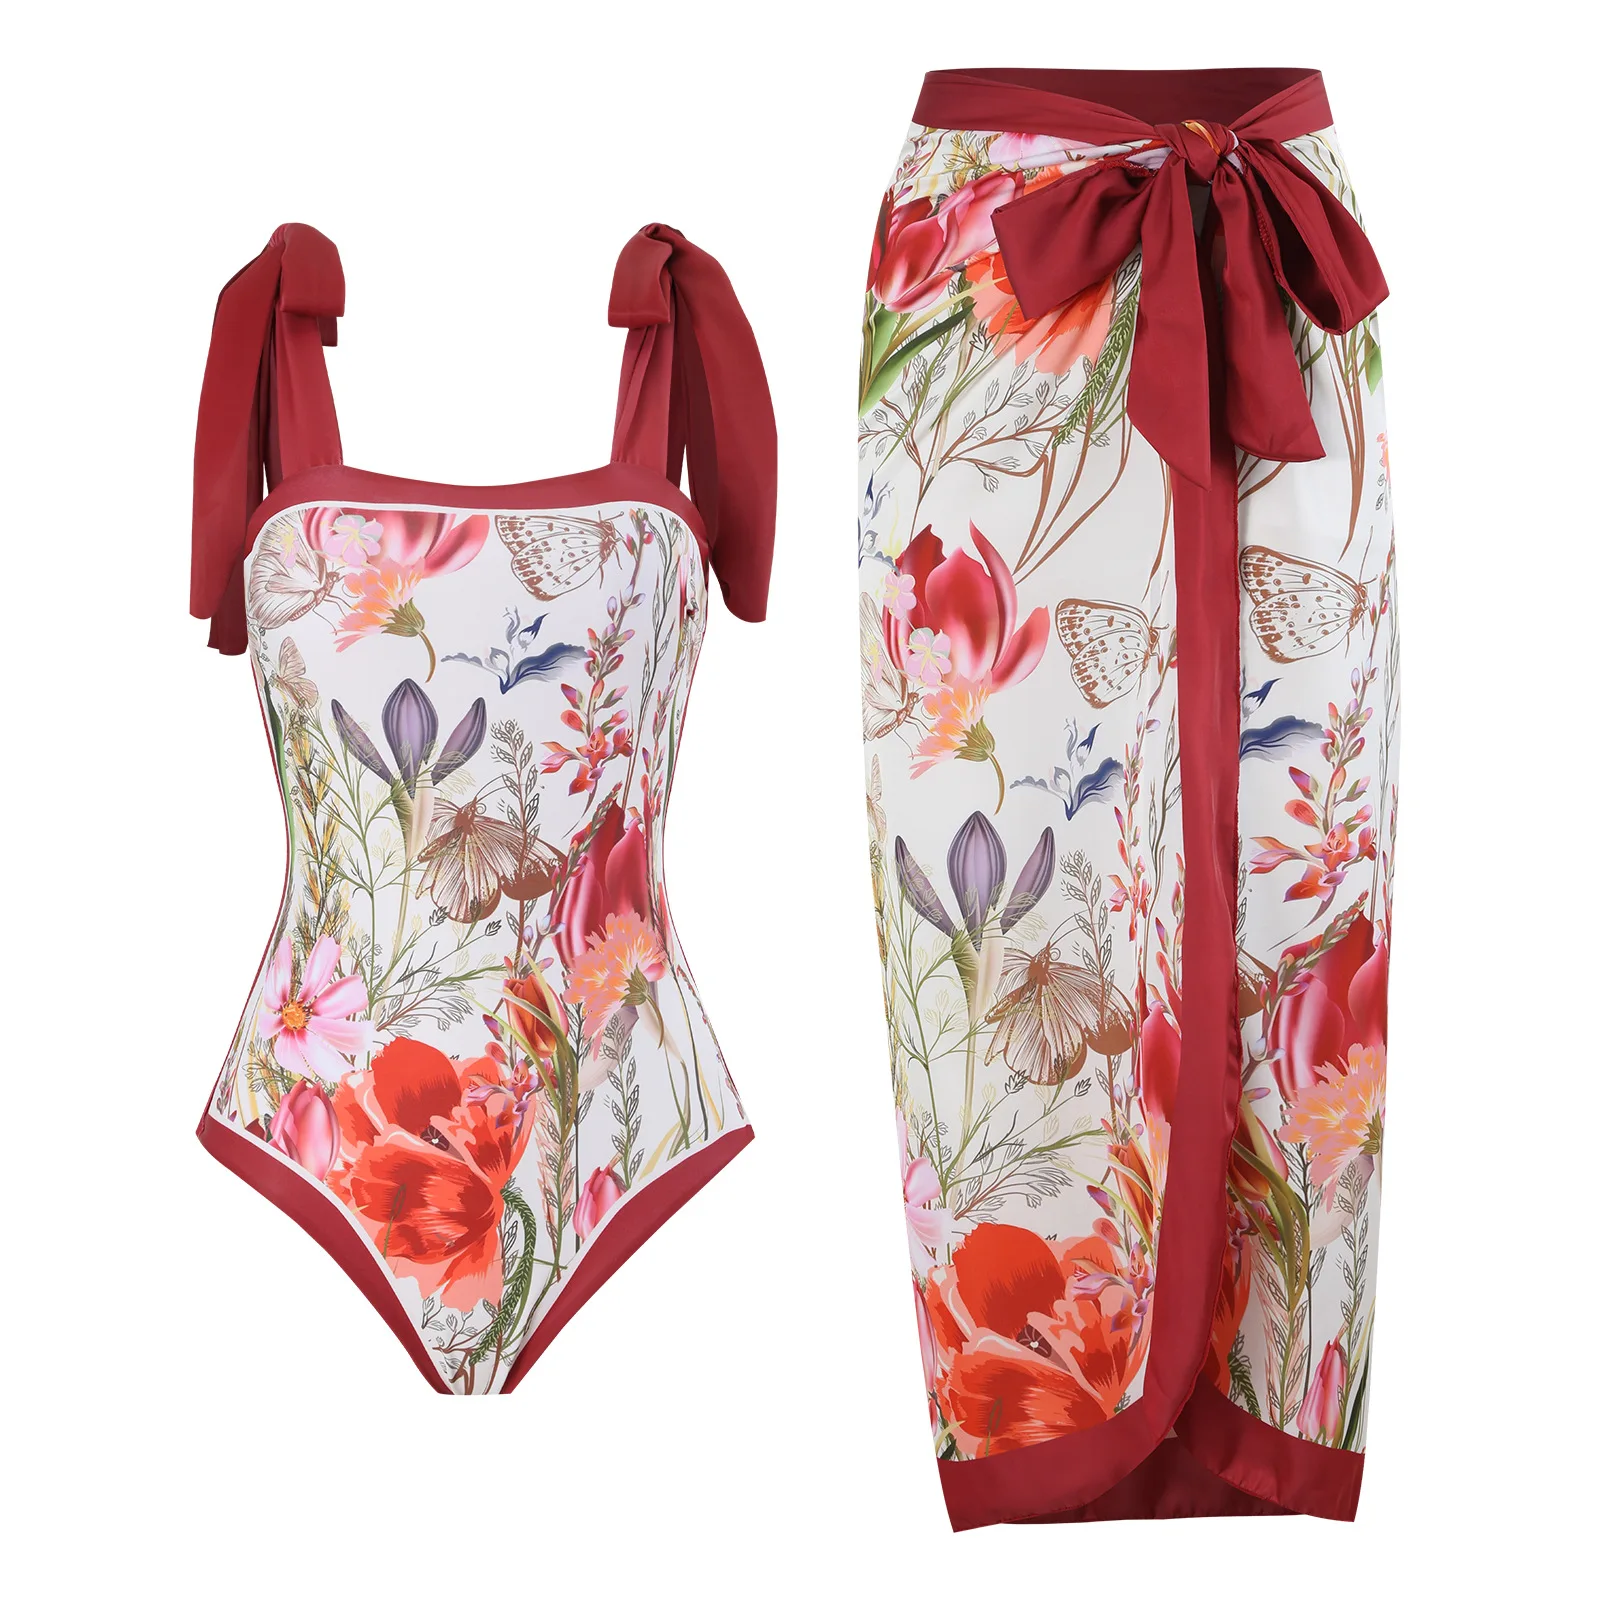 

New 2-Piece Women Bikini Set Push Up Floral Printed Ruffle Bikinis Strappy Bandage Swimwear Brazilian Biquini Bathing Suit